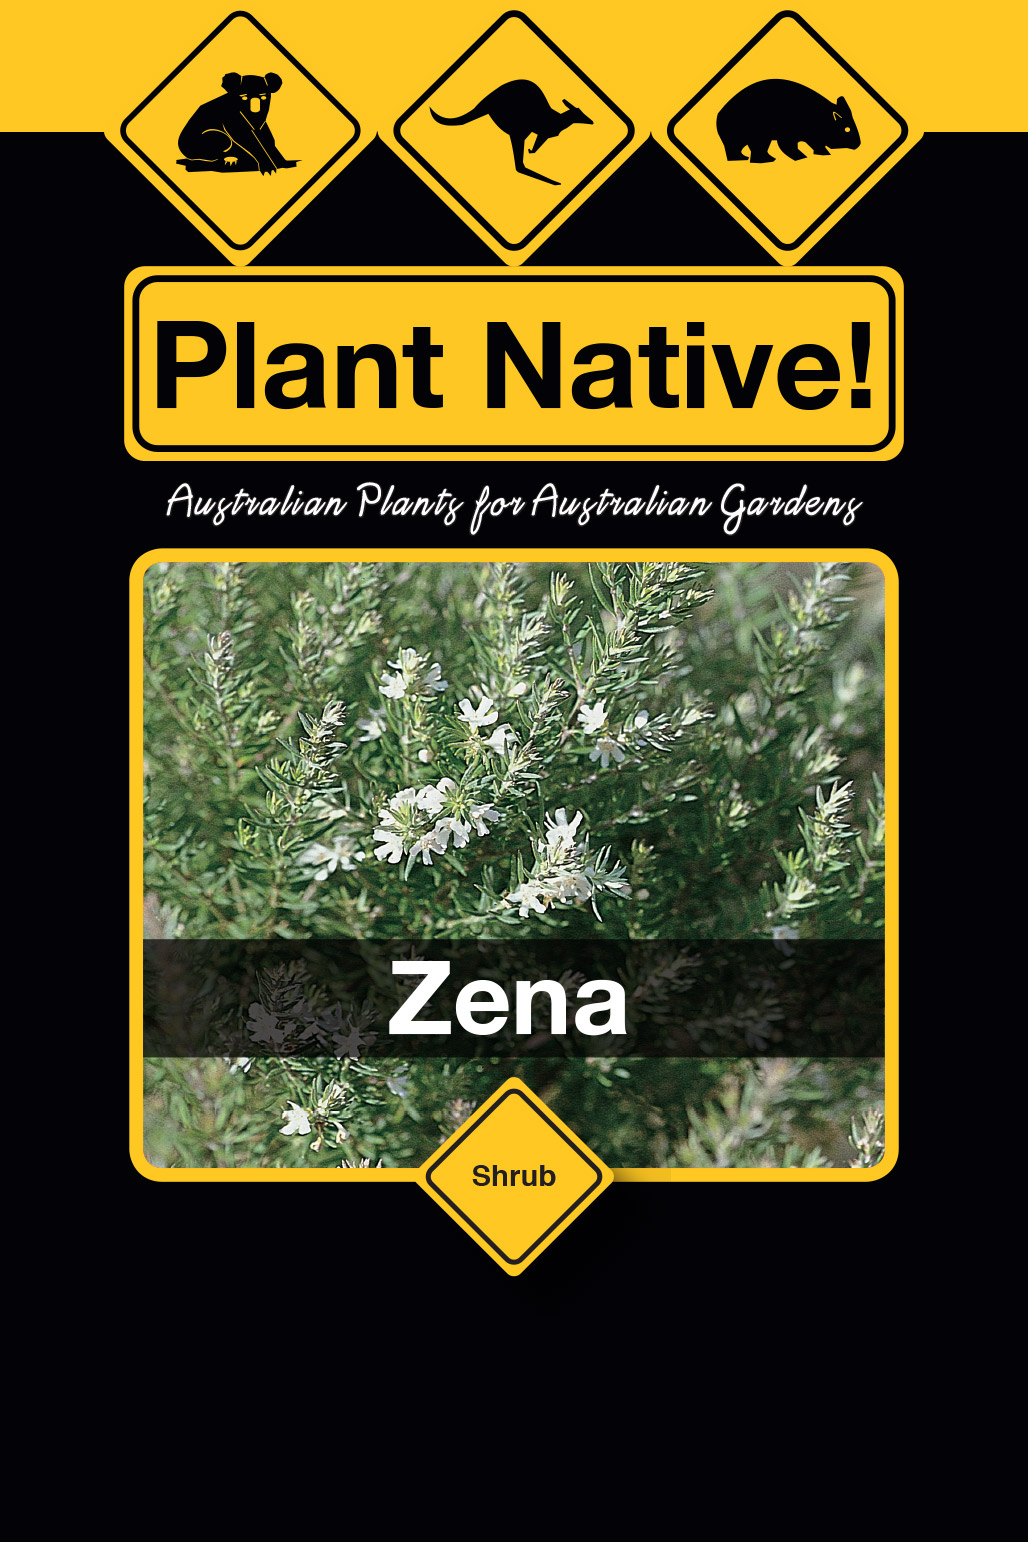 Zena - Plant Native!